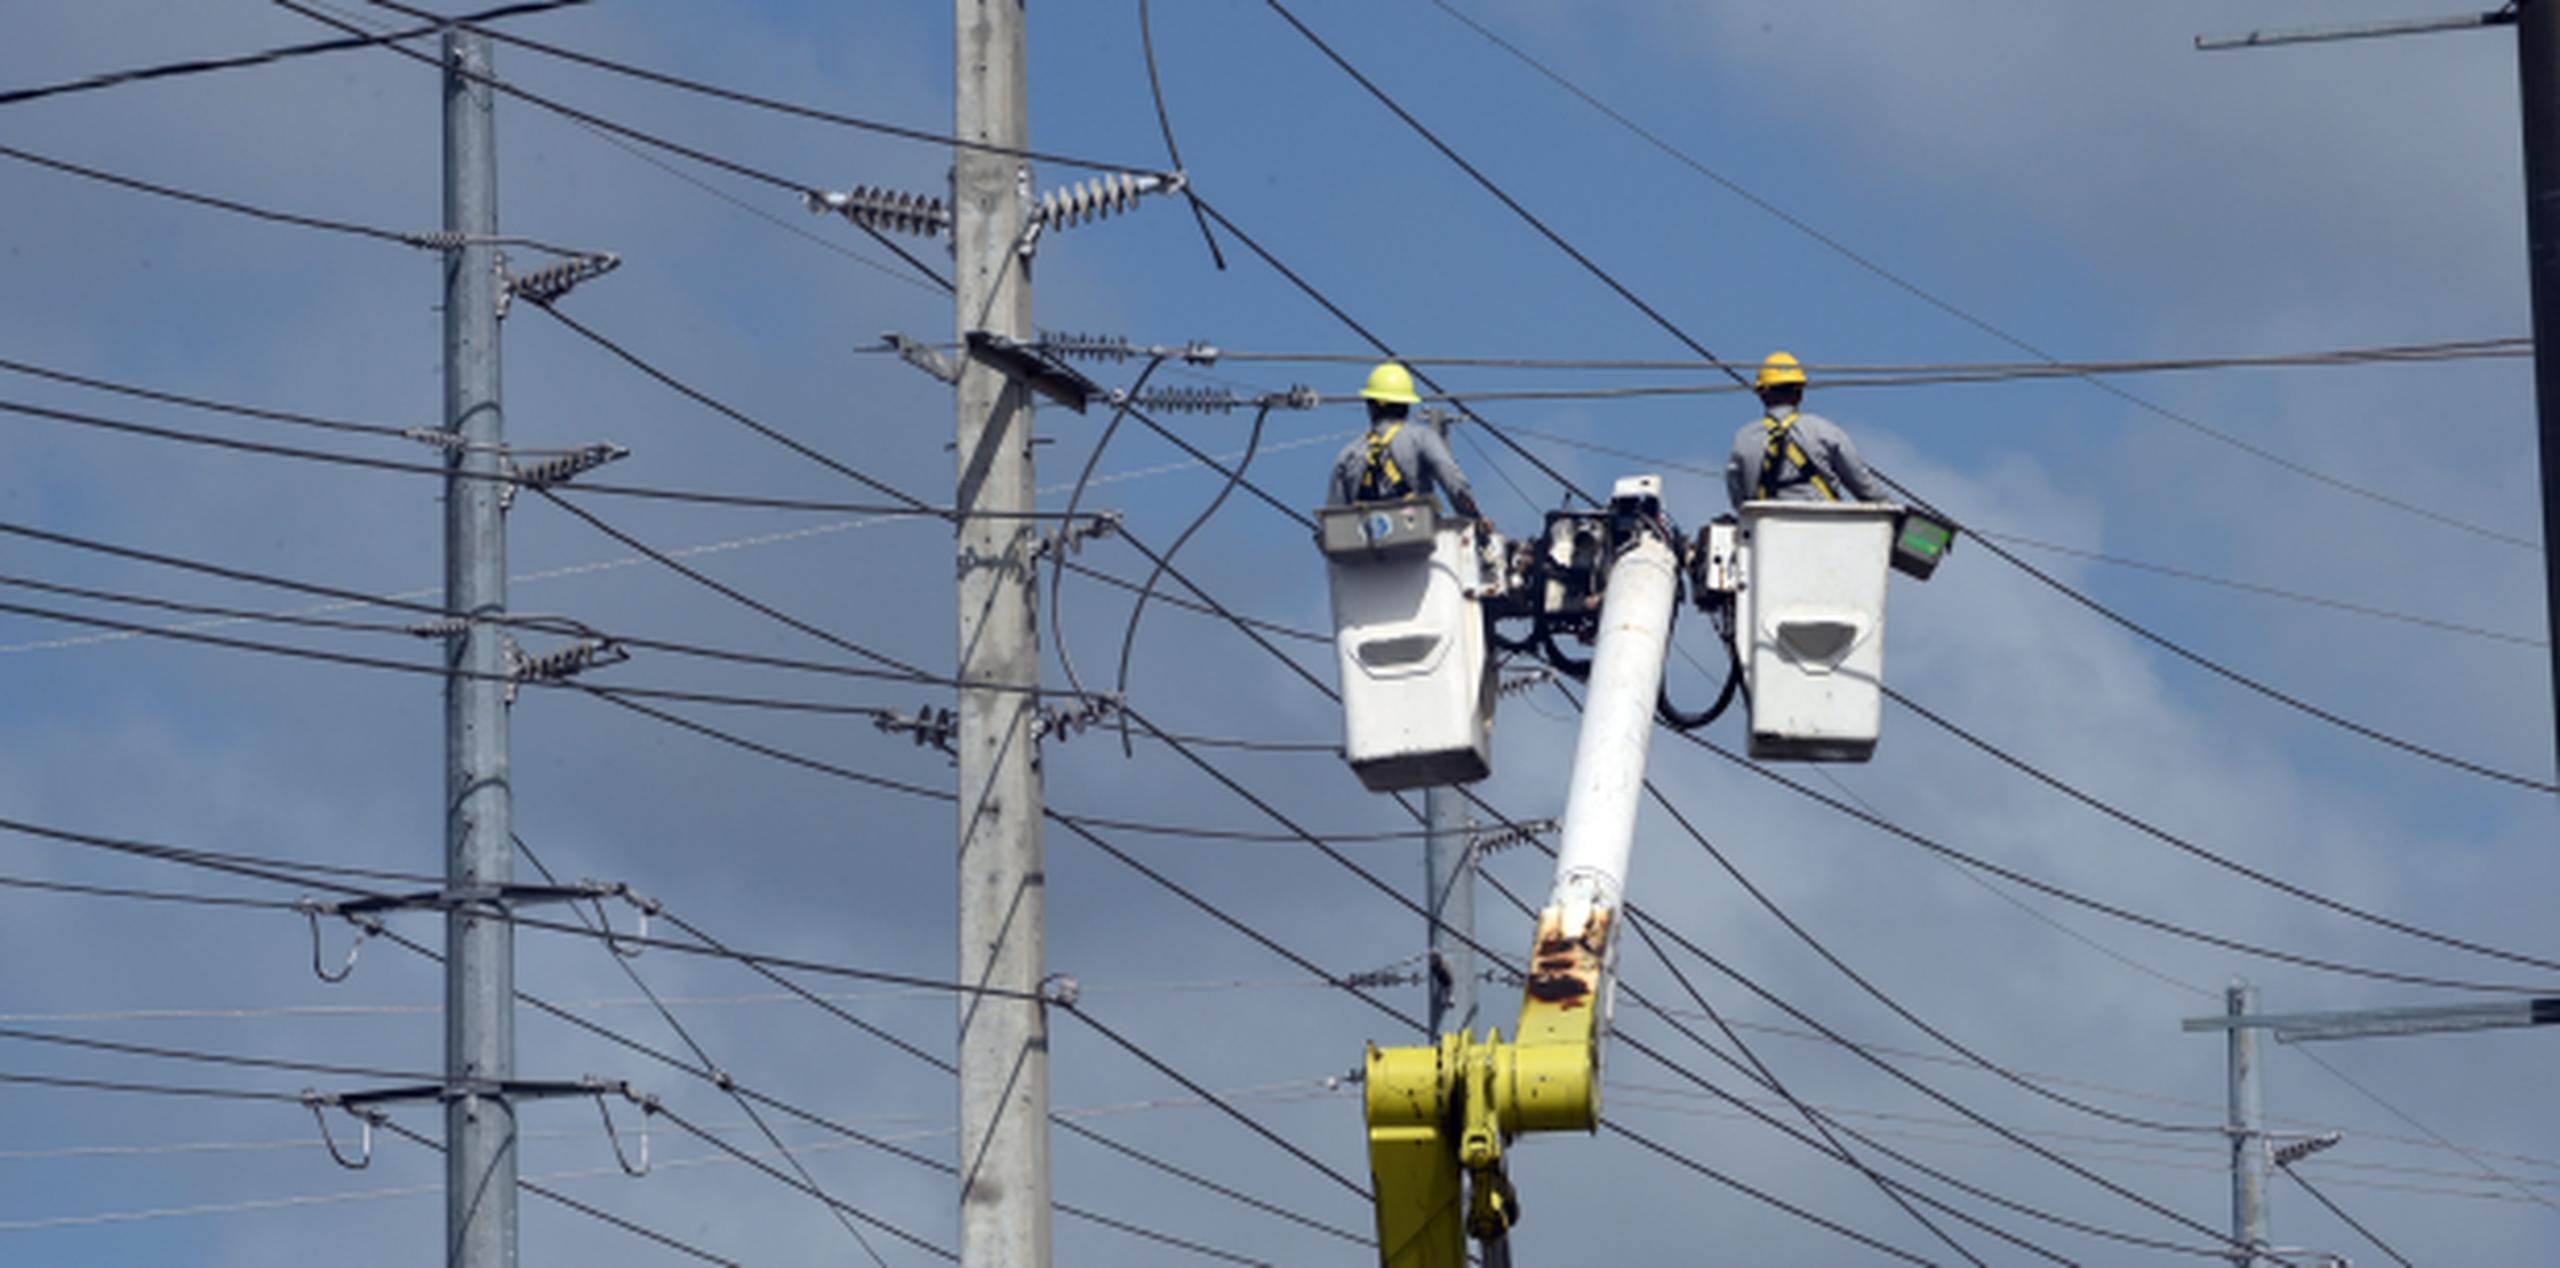 La Autoridad de Energía Eléctrica (AEE), aquí trabajando en Manatí, logró el restablecimiento del servicio en una zona crítica del pueblo de Camuy. (andre.kang@gfrmedia.com)